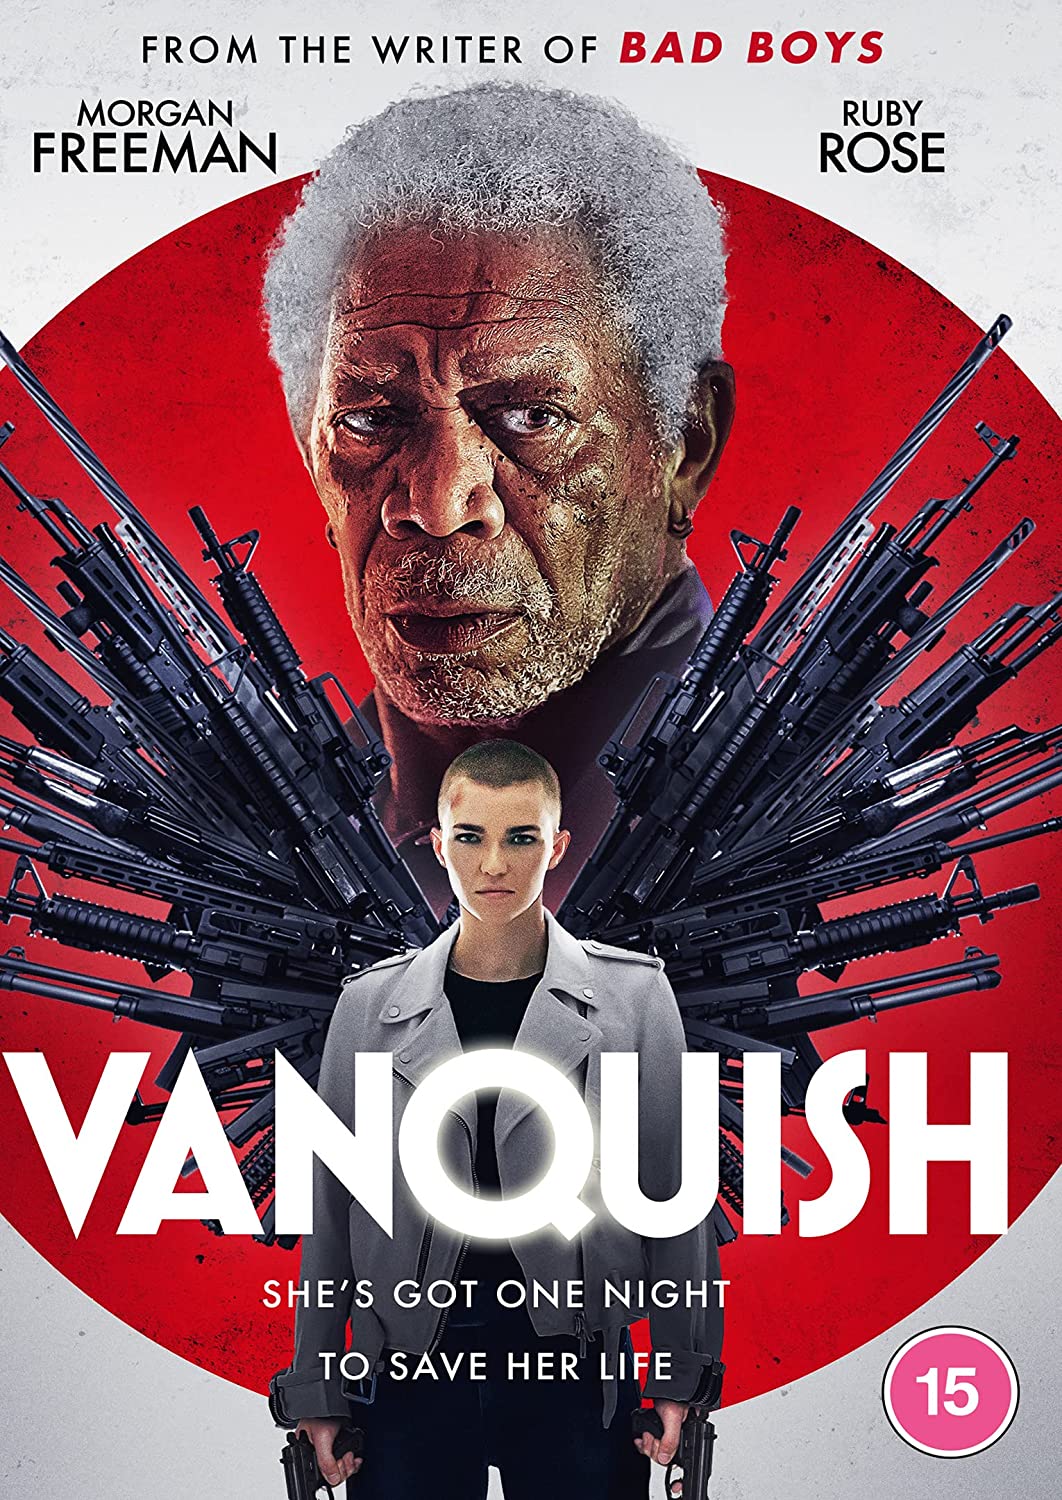 Vanquish - Action/Thriller [DVD]